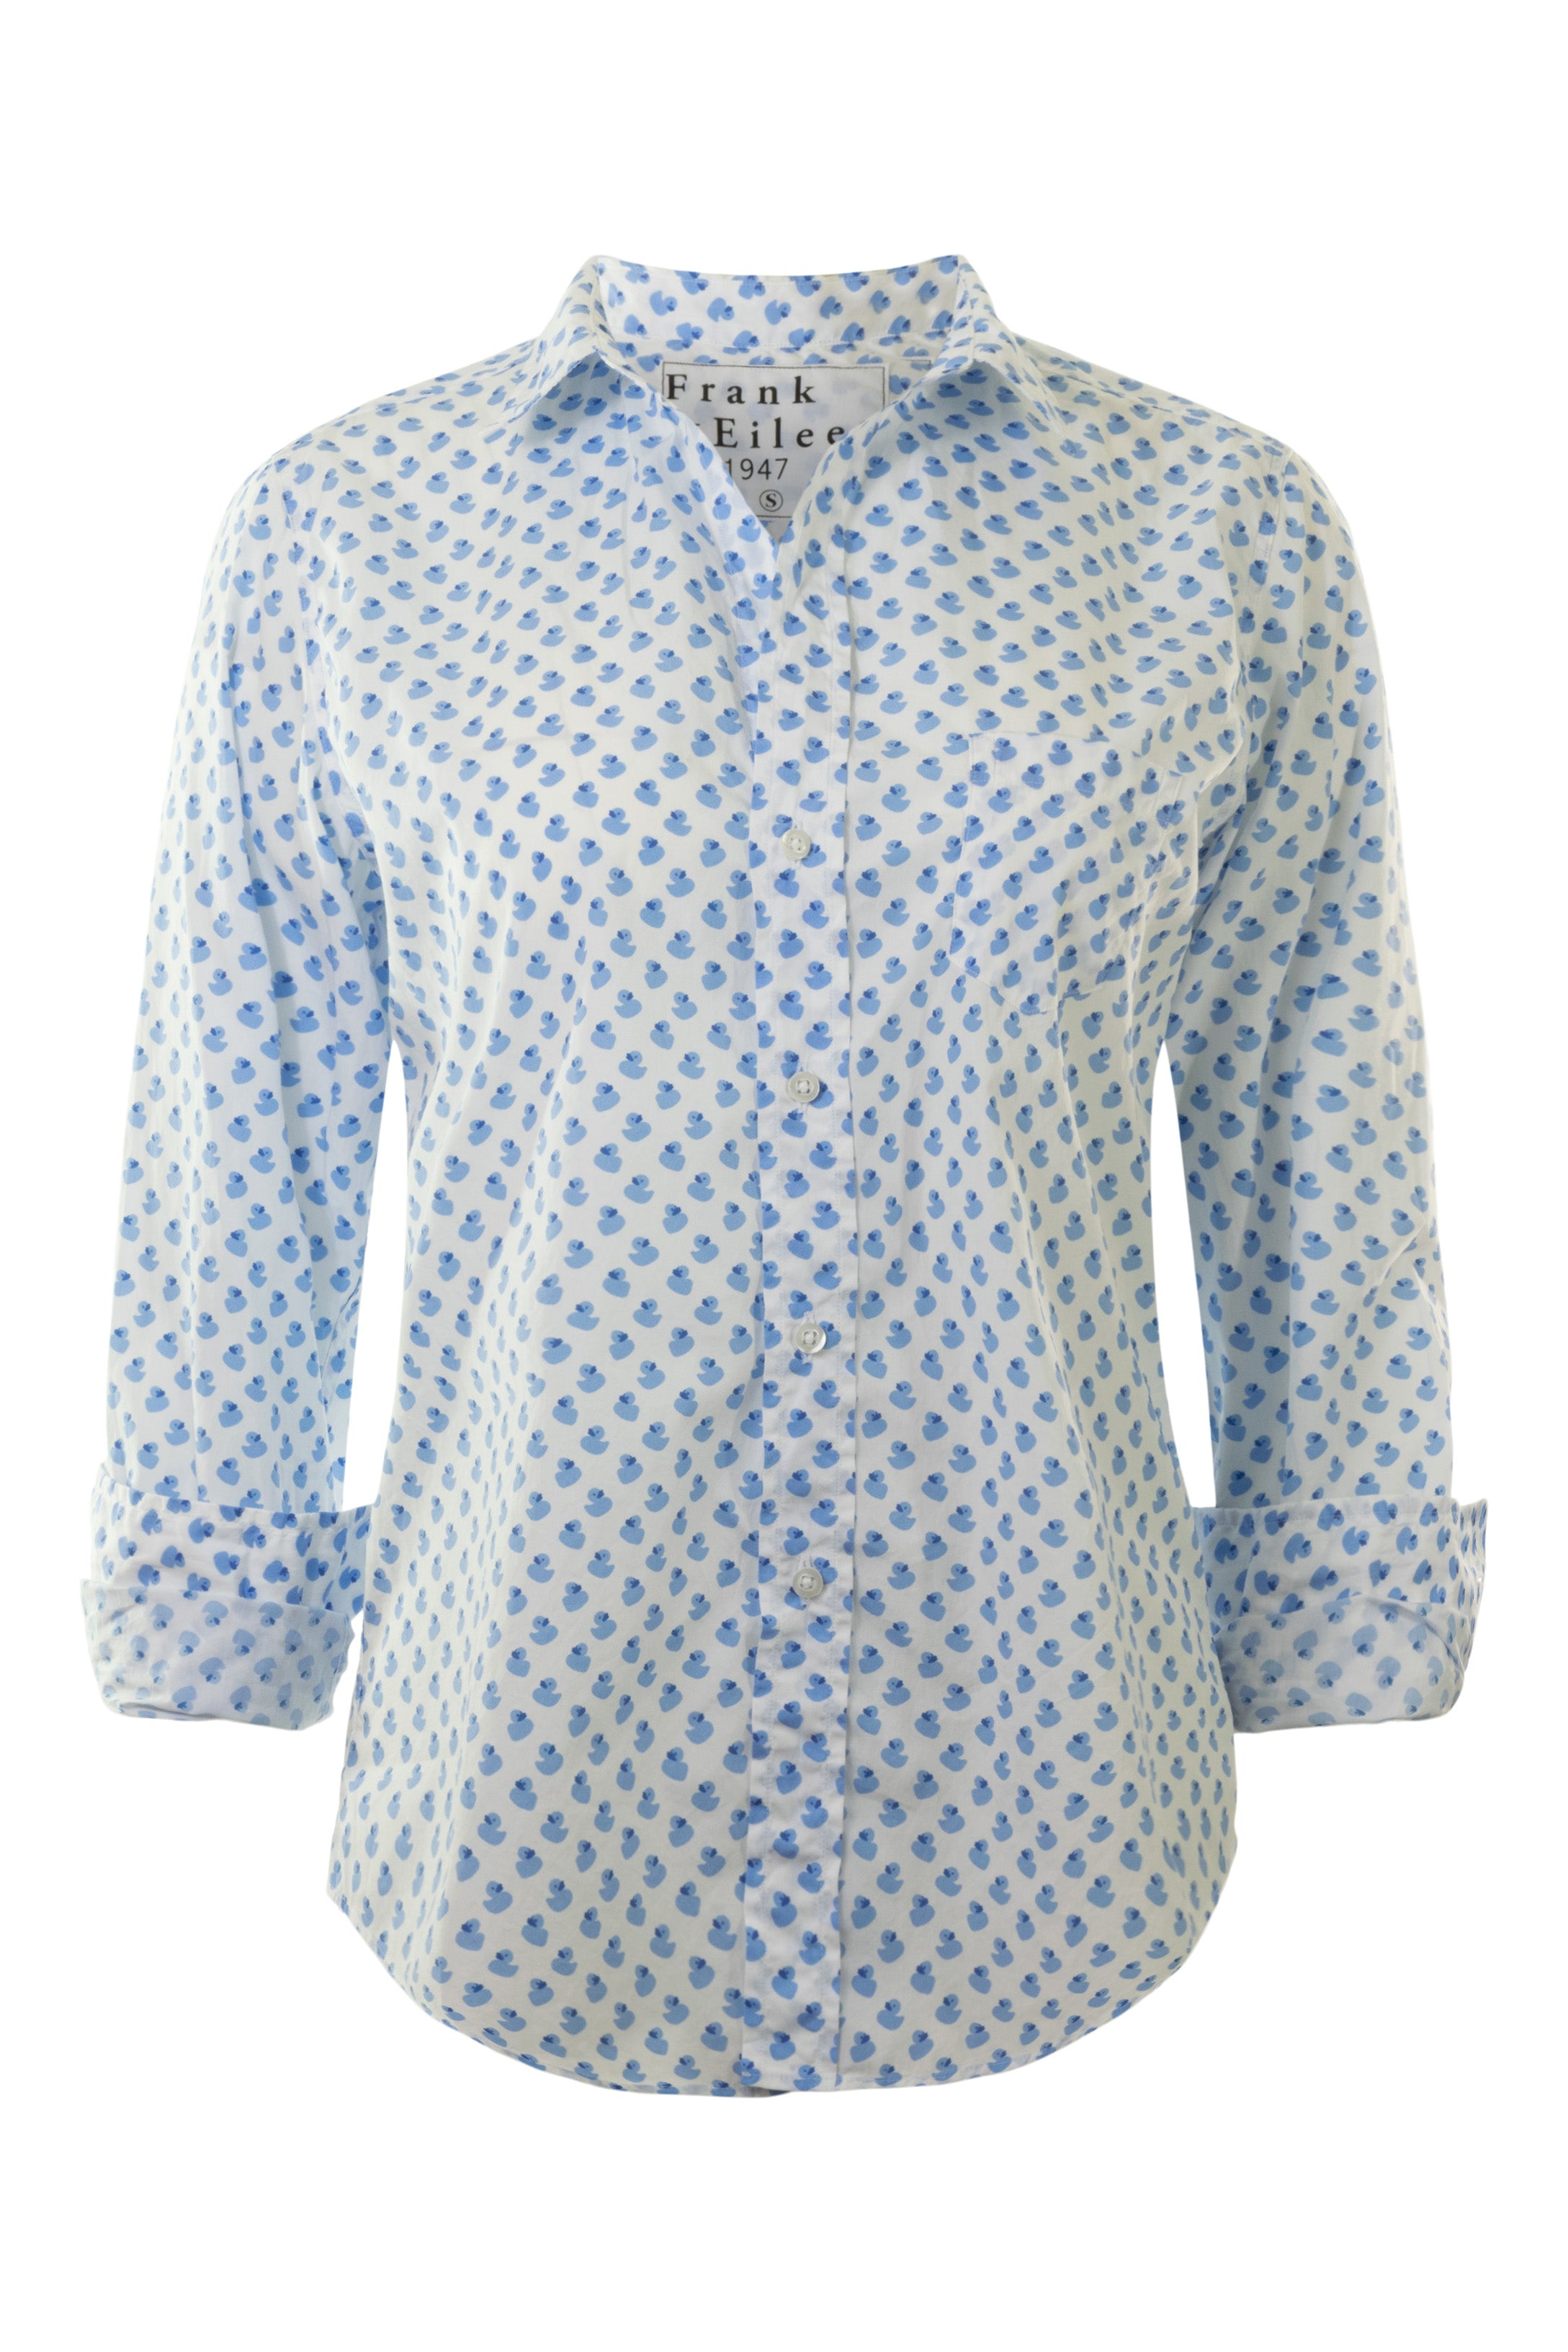 Frank & Eileen Barry Tailored Button Up Shirt Blue Rubber Duckies